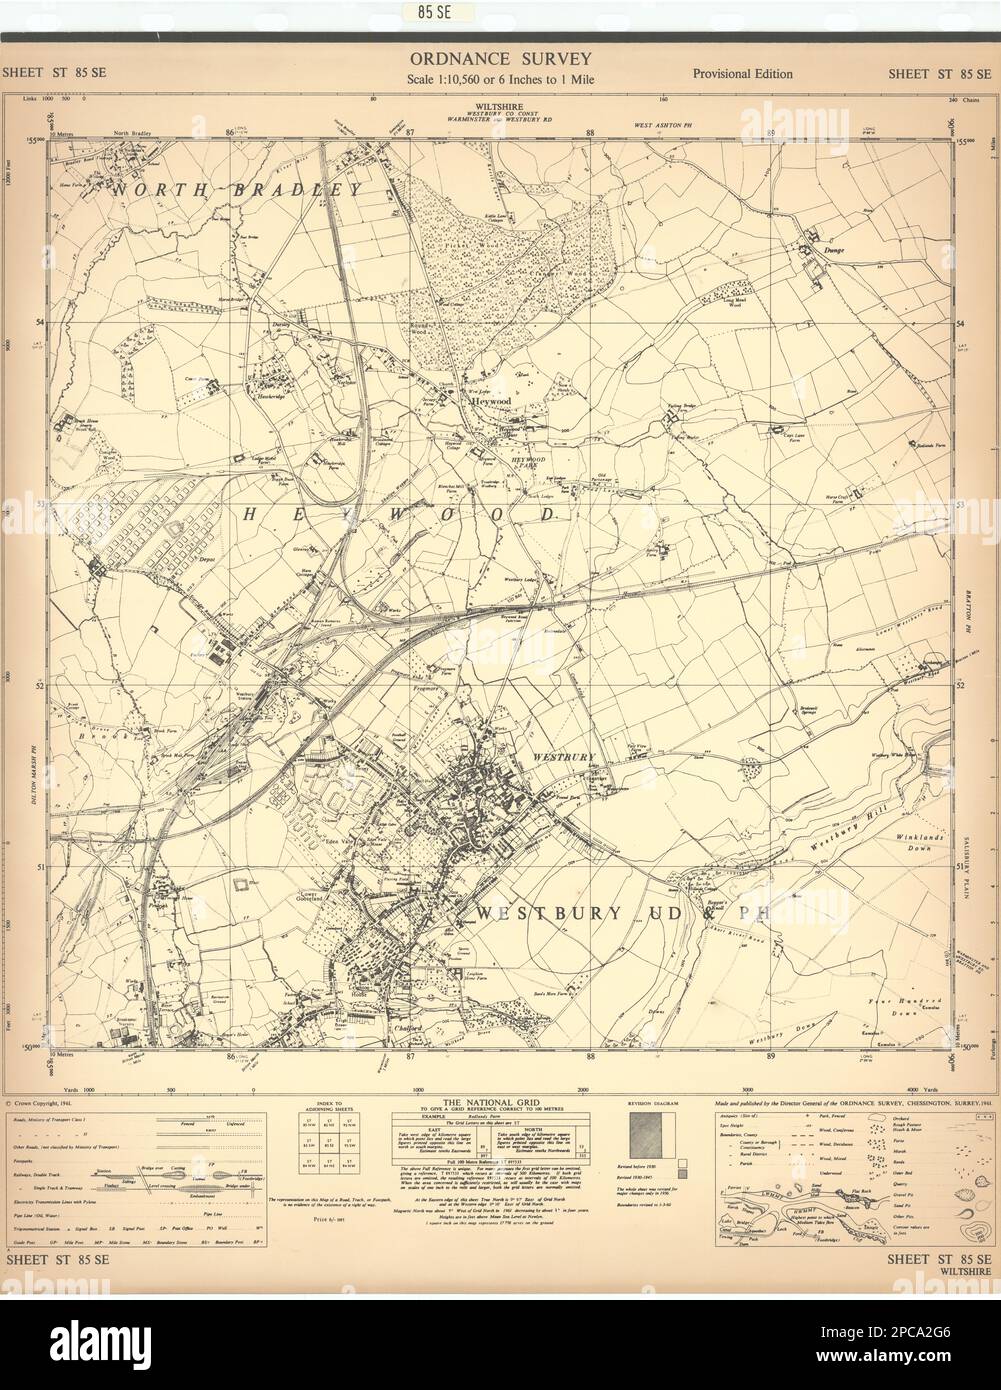 Hoja de estudio de ordnance ST85SE Wiltshire Westbury Heywood 1961 antiguo mapa vintage Foto de stock